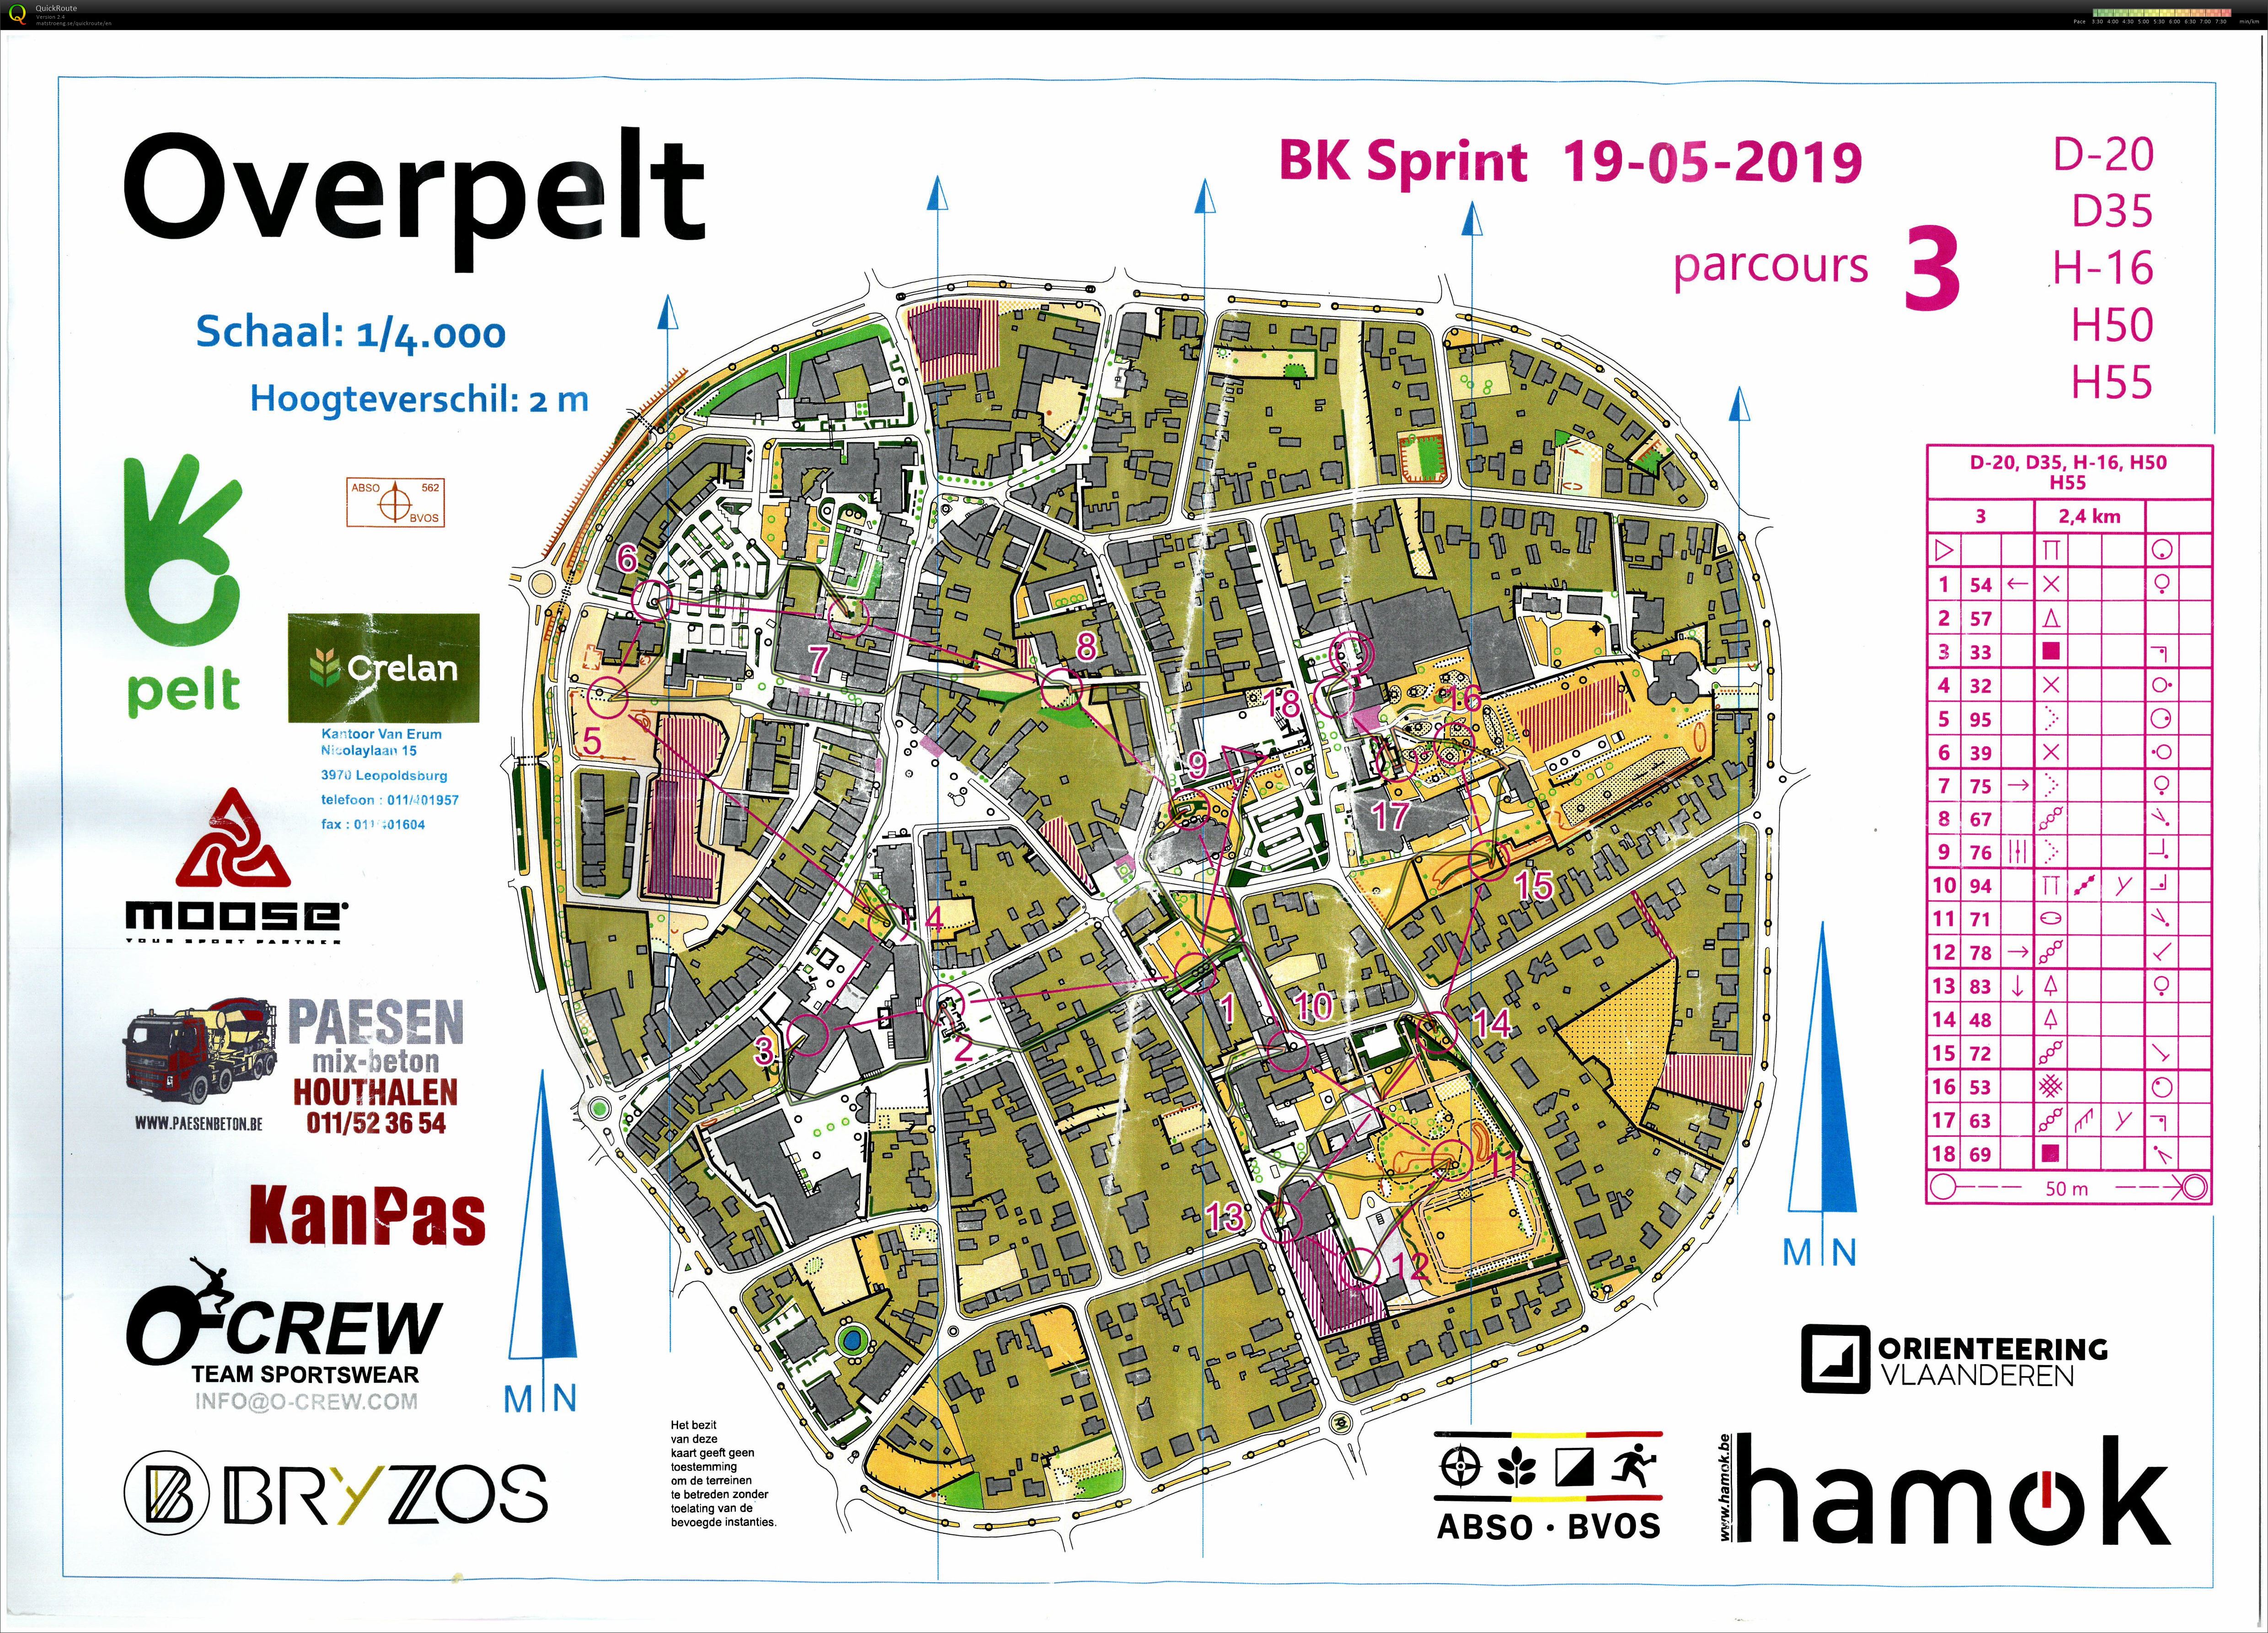 Championnat de Belgique de Sprint (19-05-2019)